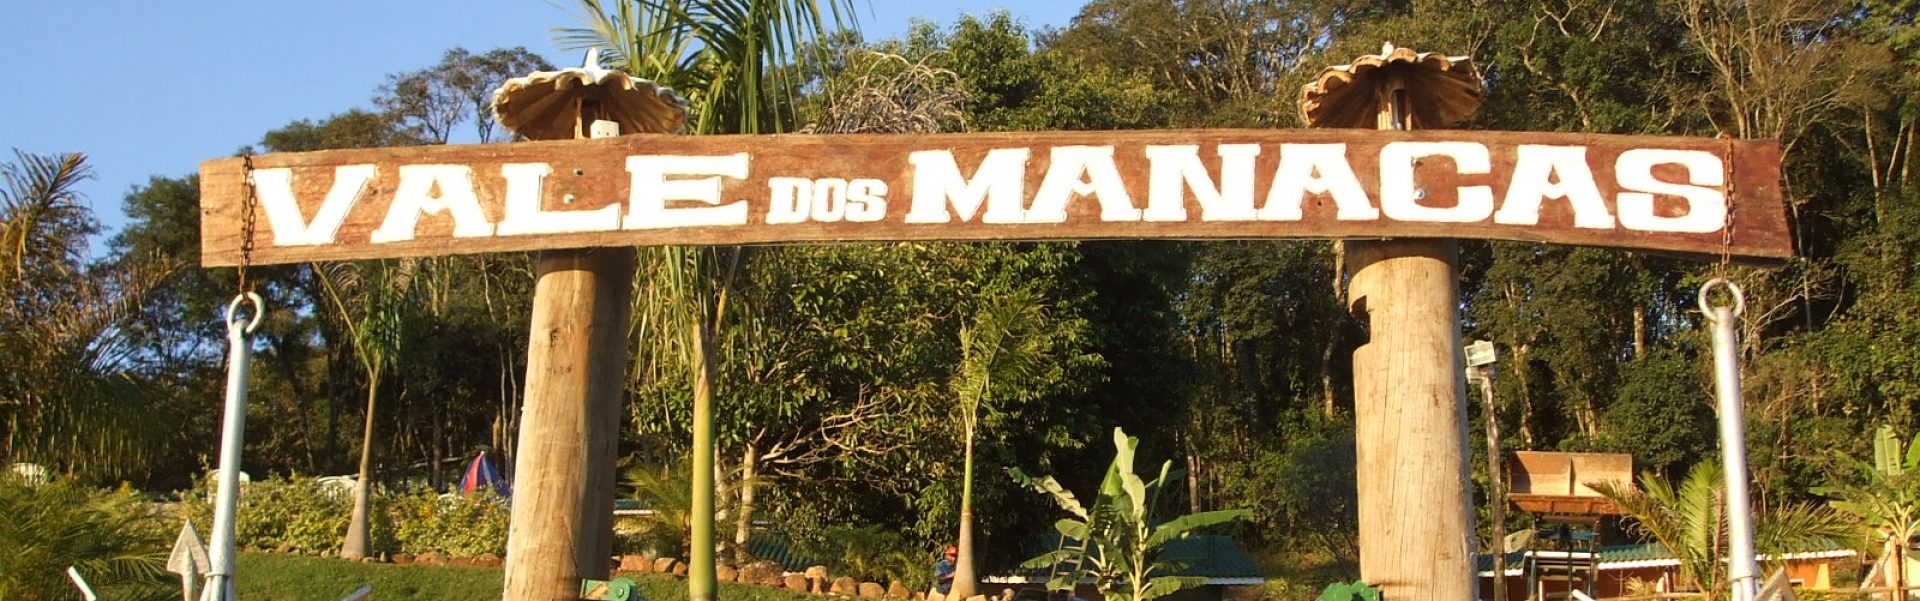 Vale dos Manacas